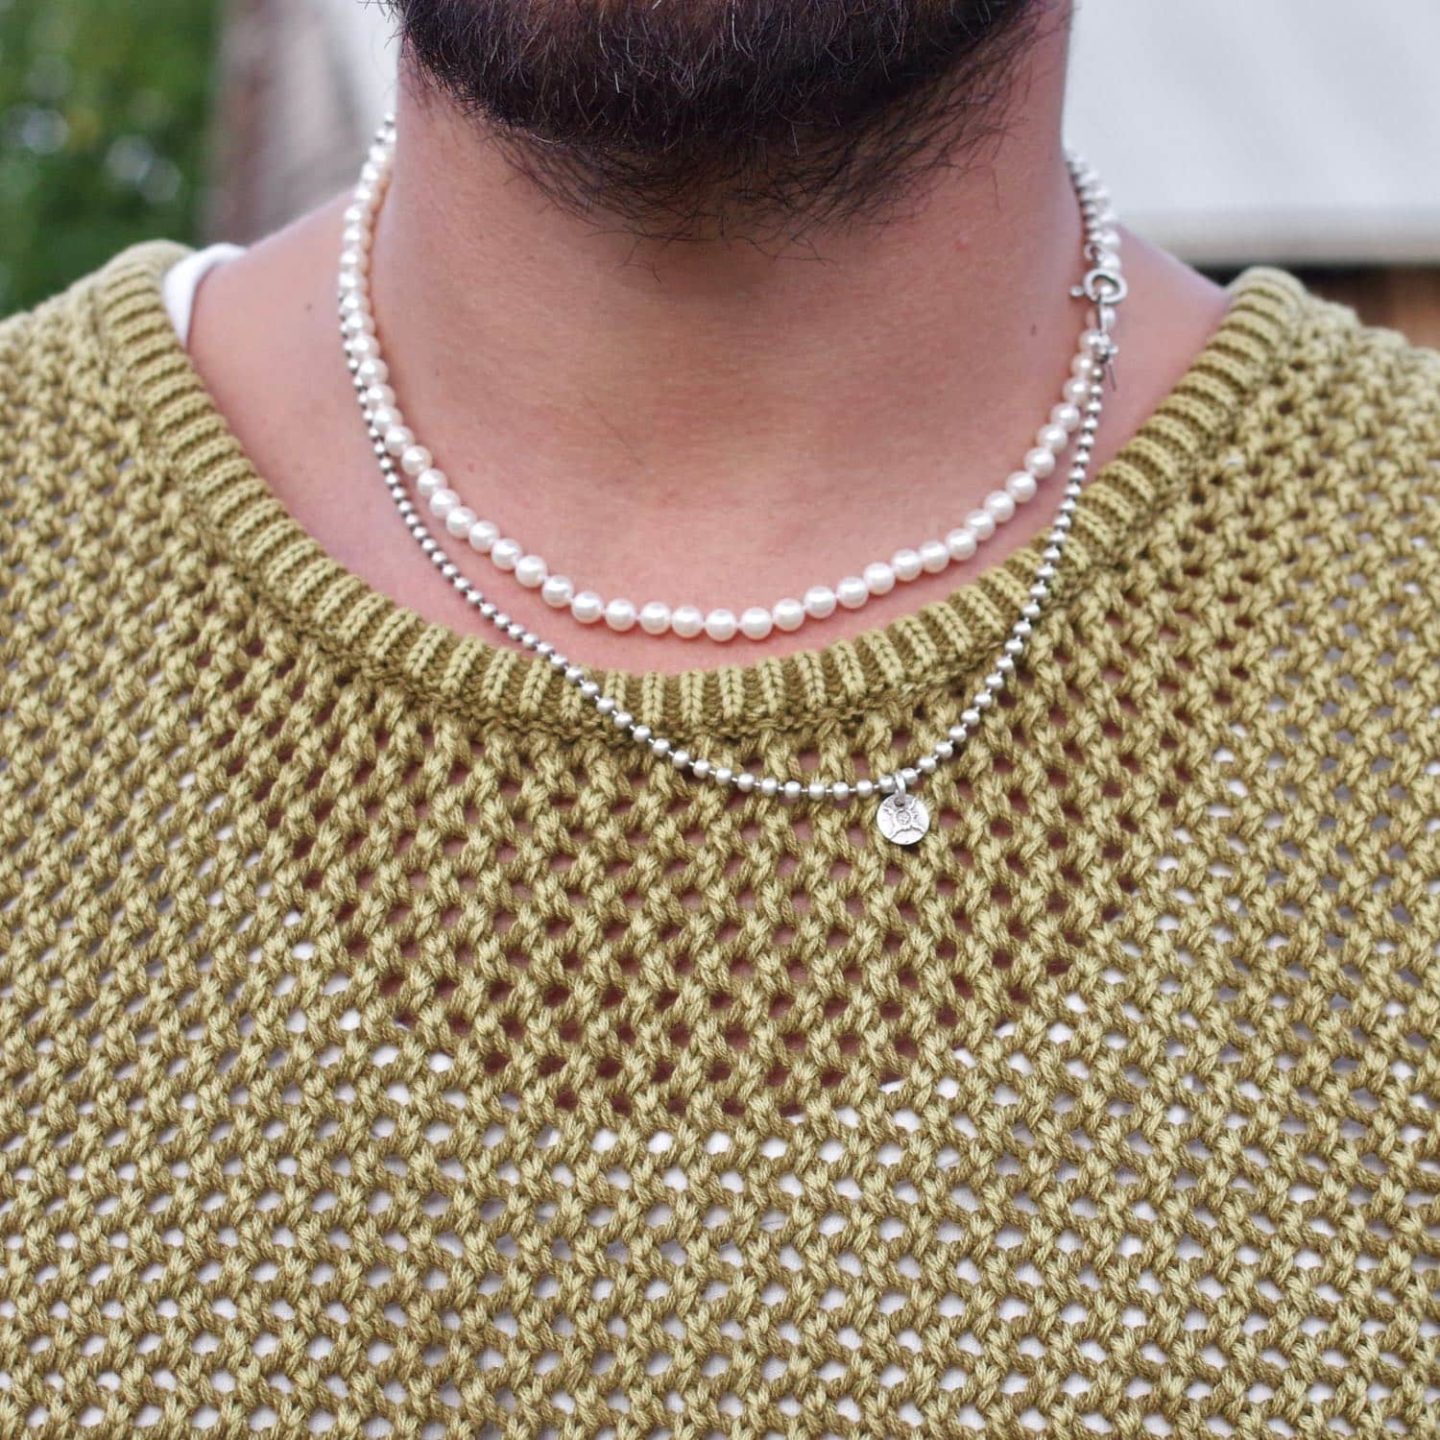 collier de perles vintage et chaine en argent type vietnam avec charm first arrows's